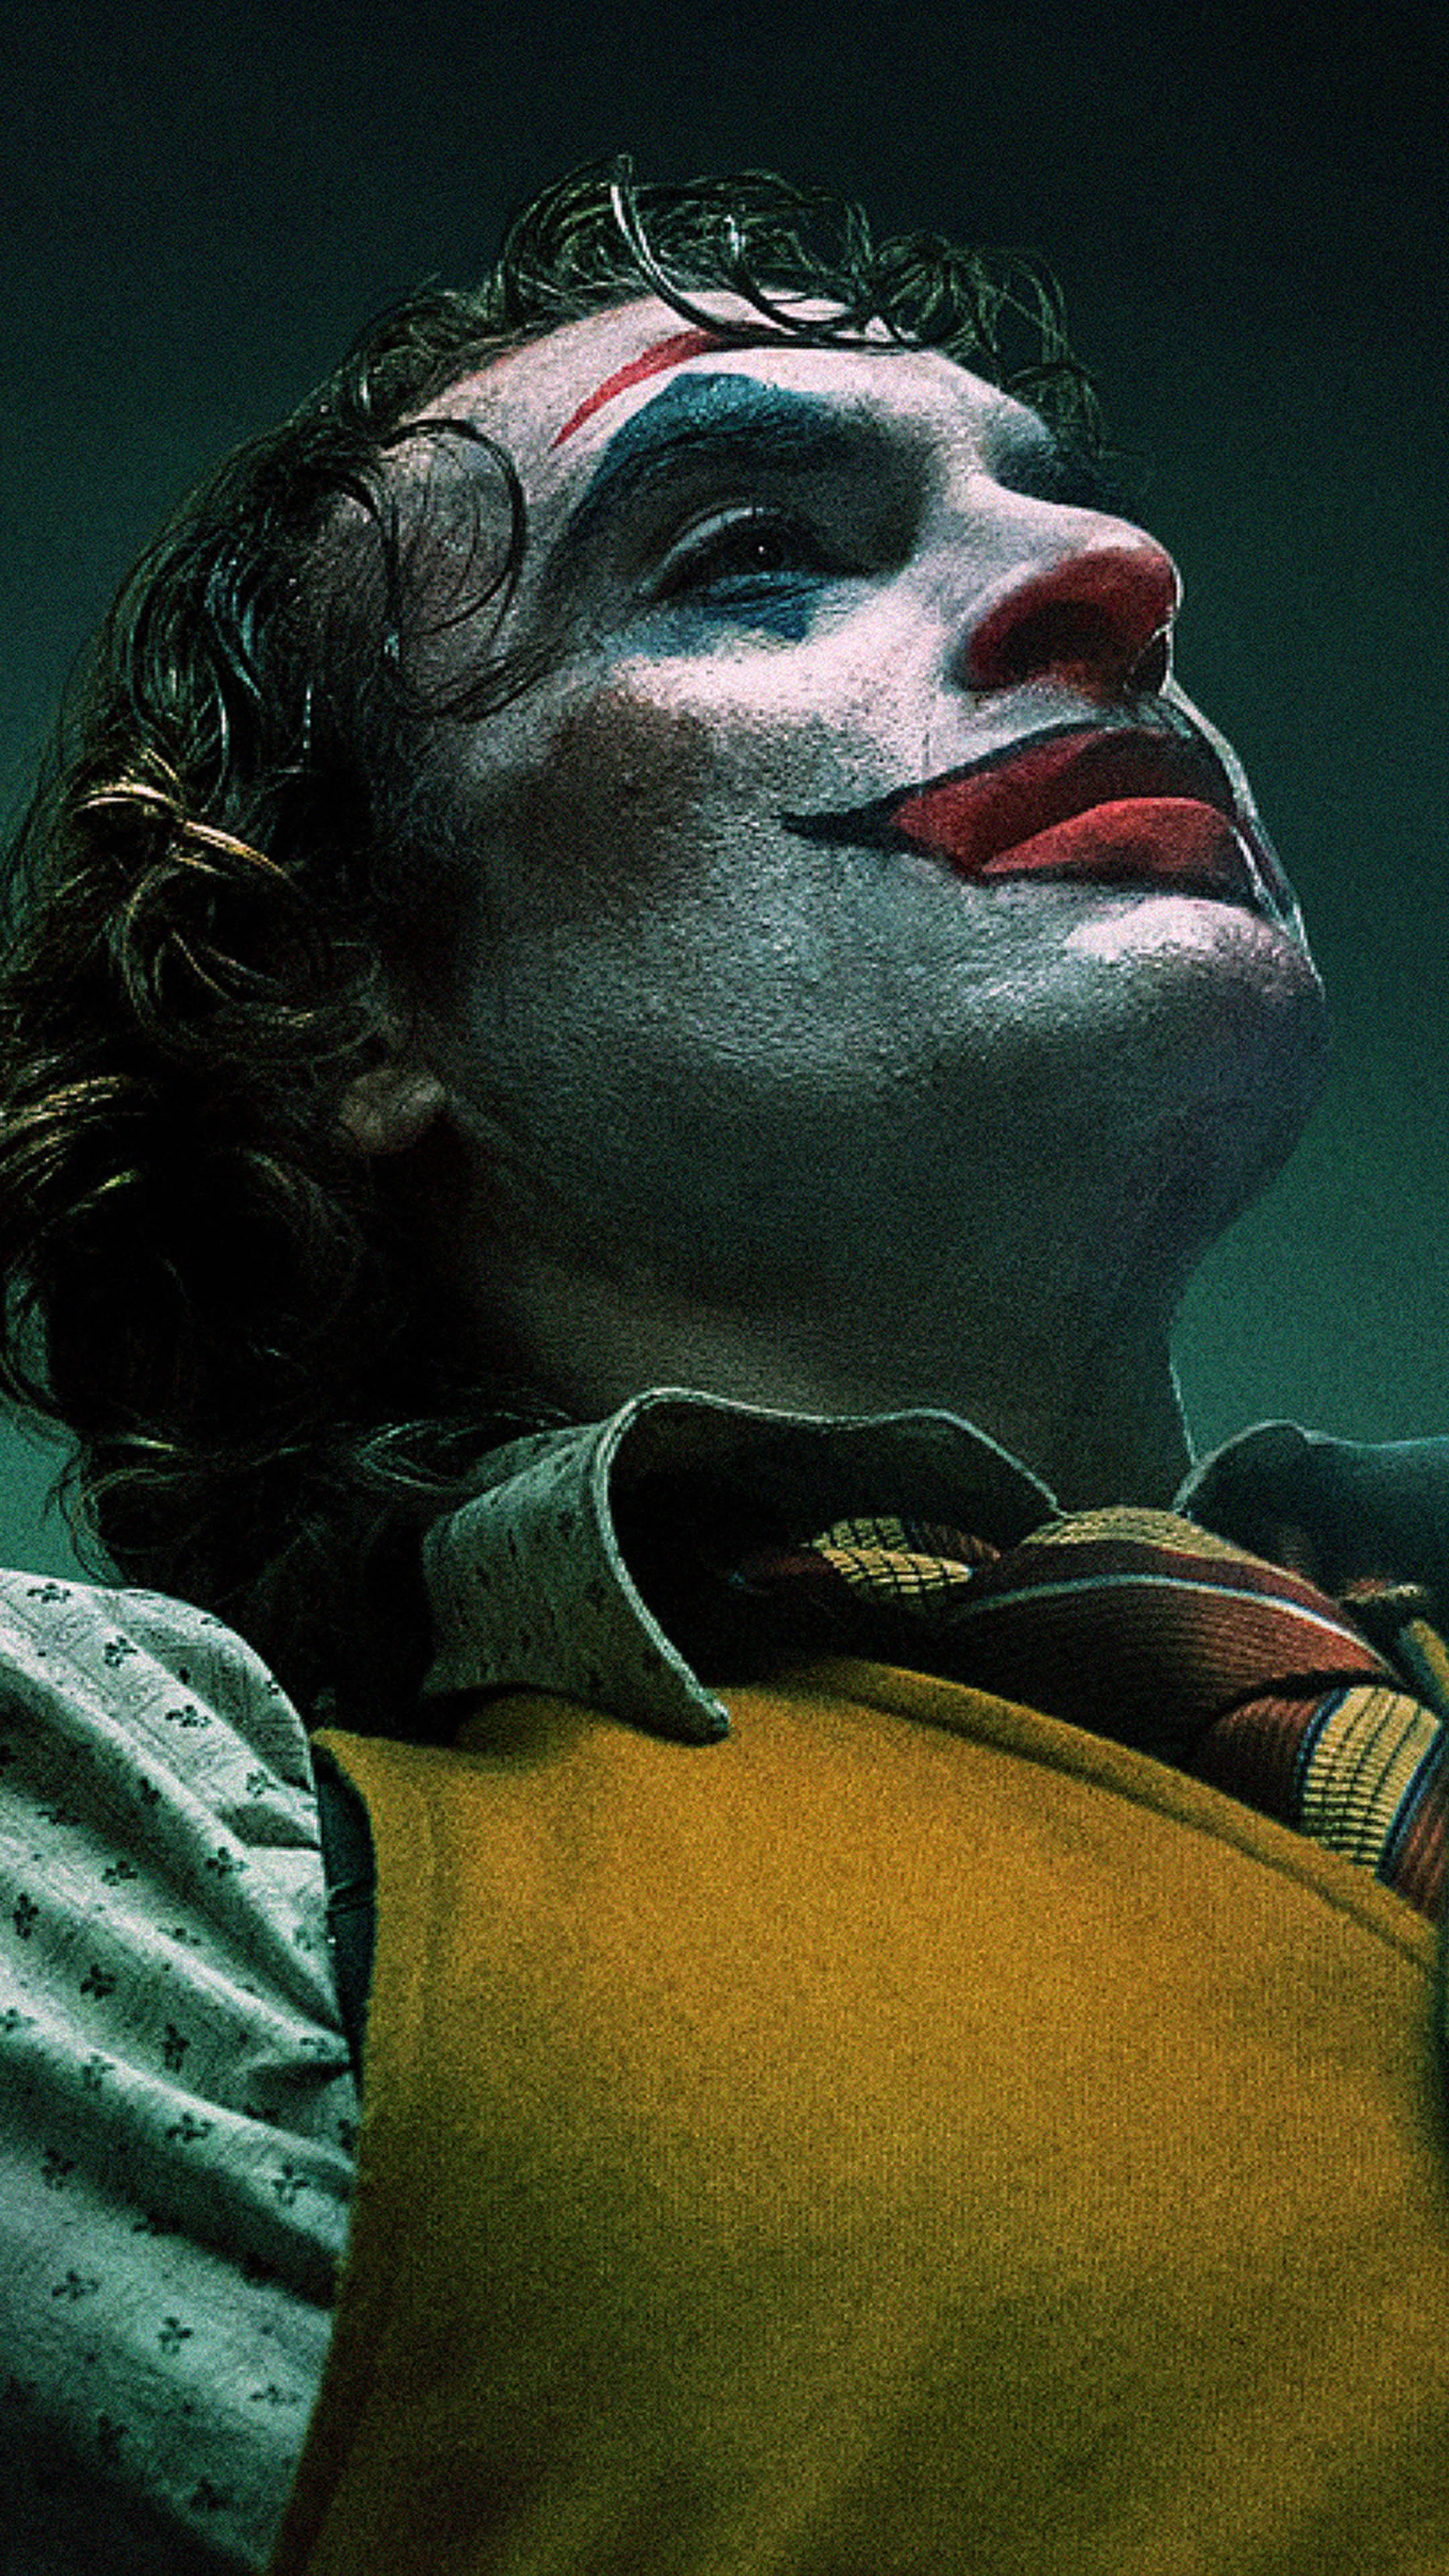 Joaquin Phoenix Joker 2019 Movie Free 4K Ultra HD Mobile Wallpaper